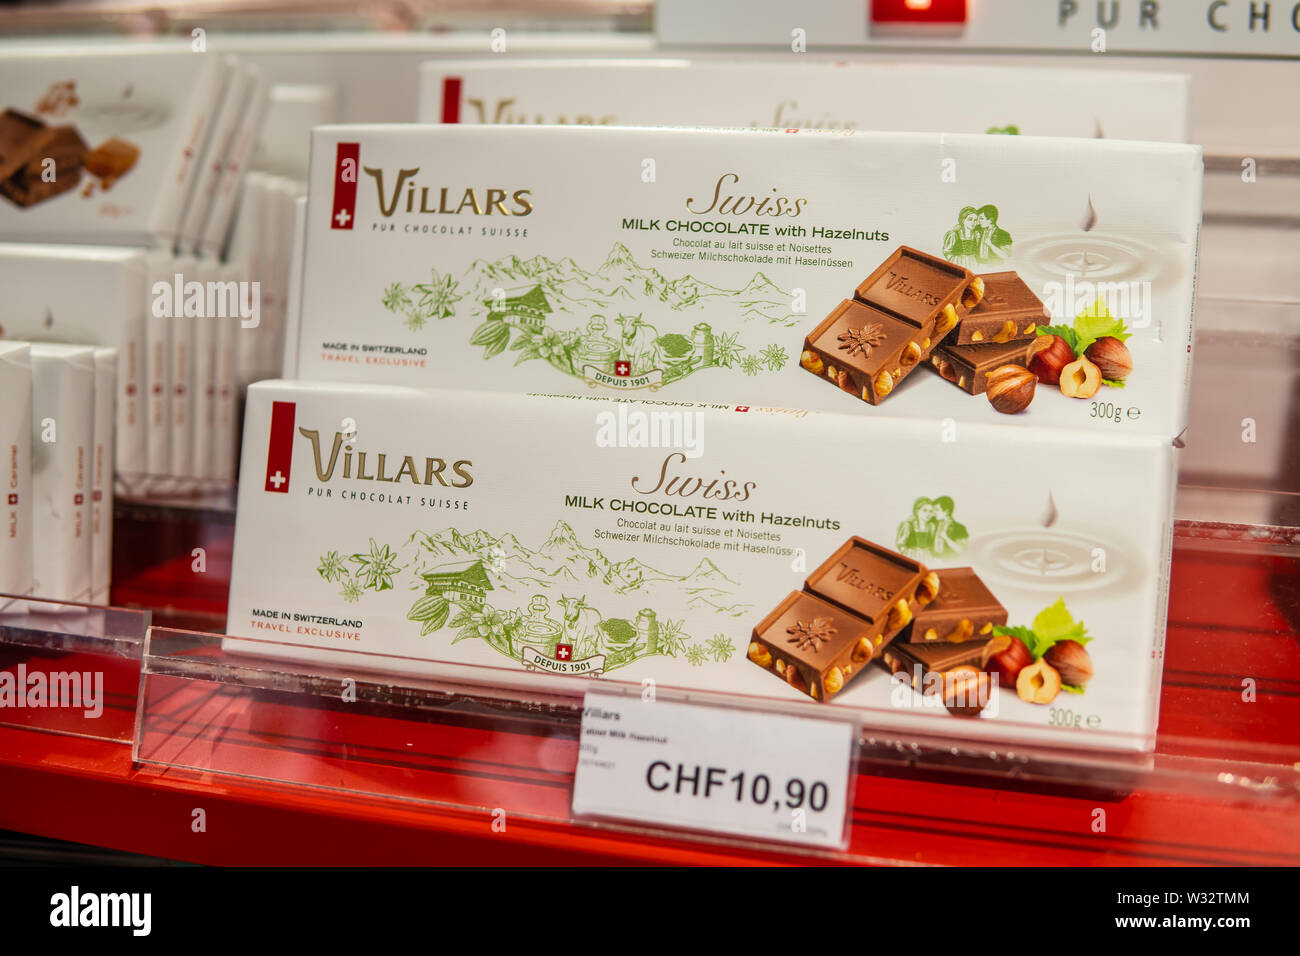 Genève, Suisse, mars 2019 Villars Suisse Pur Chocolat, boîte de chocolats sur le shop pour la vente d'affichage Banque D'Images